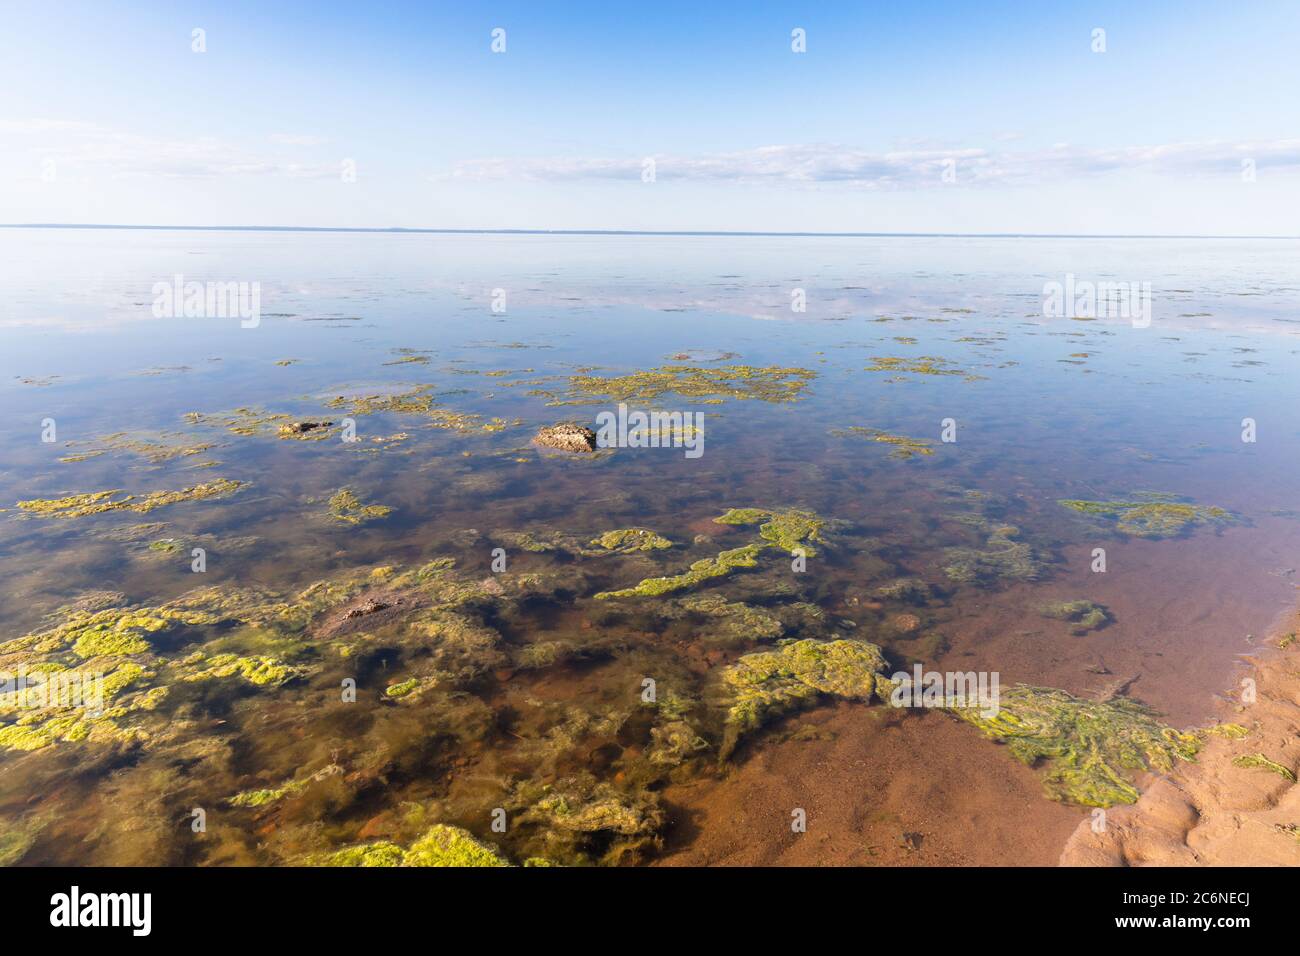 Konzept der toten Natur. Schmutziges Abwasser verursachte ein schnelles Wachstum von giftigen Algen in See, Meer. Wasserverschmutzung. Ökologisches Problem. Zerstörung von Wildtieren Stockfoto